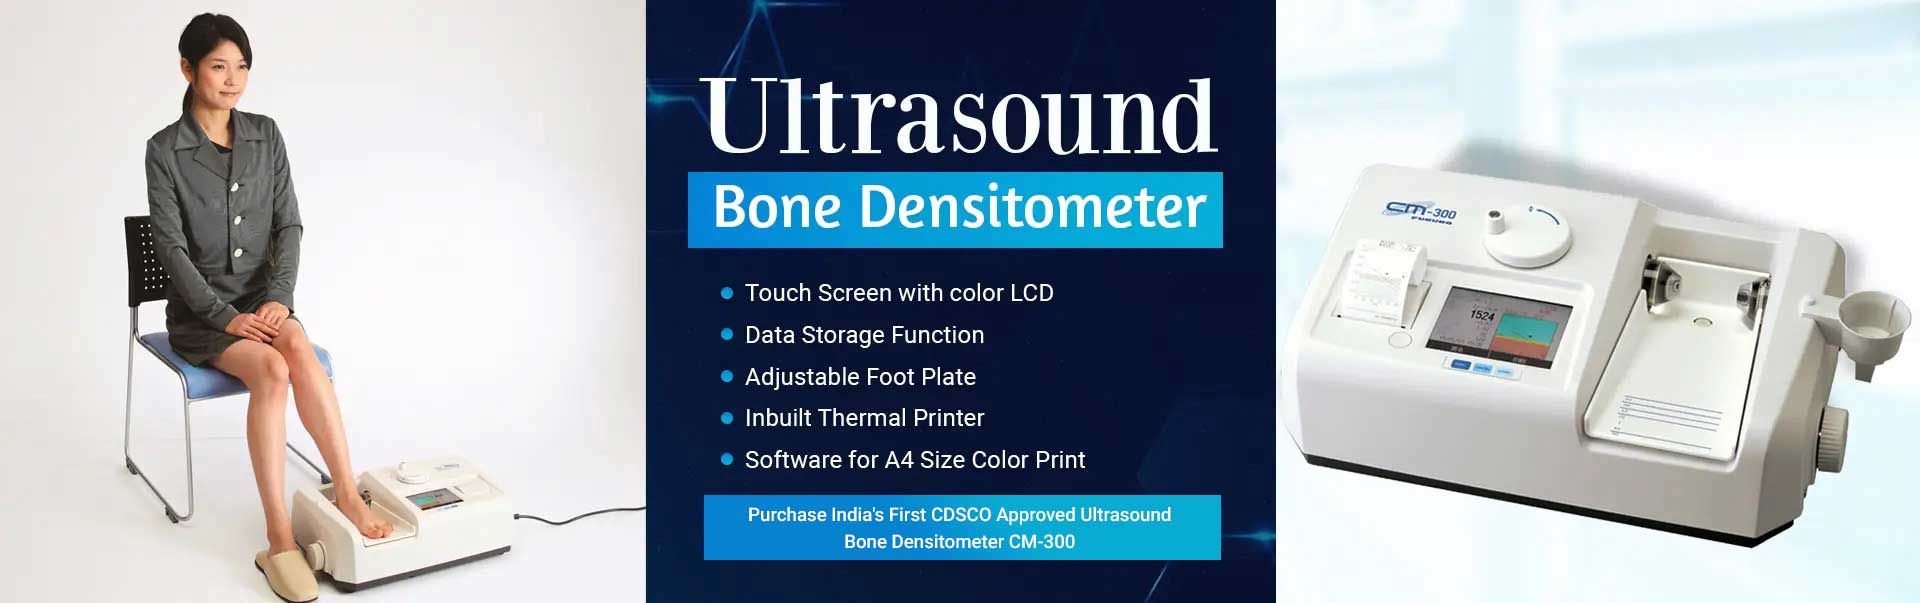 Ultrasound Bone Densitometer Manufacturers in Gwalior